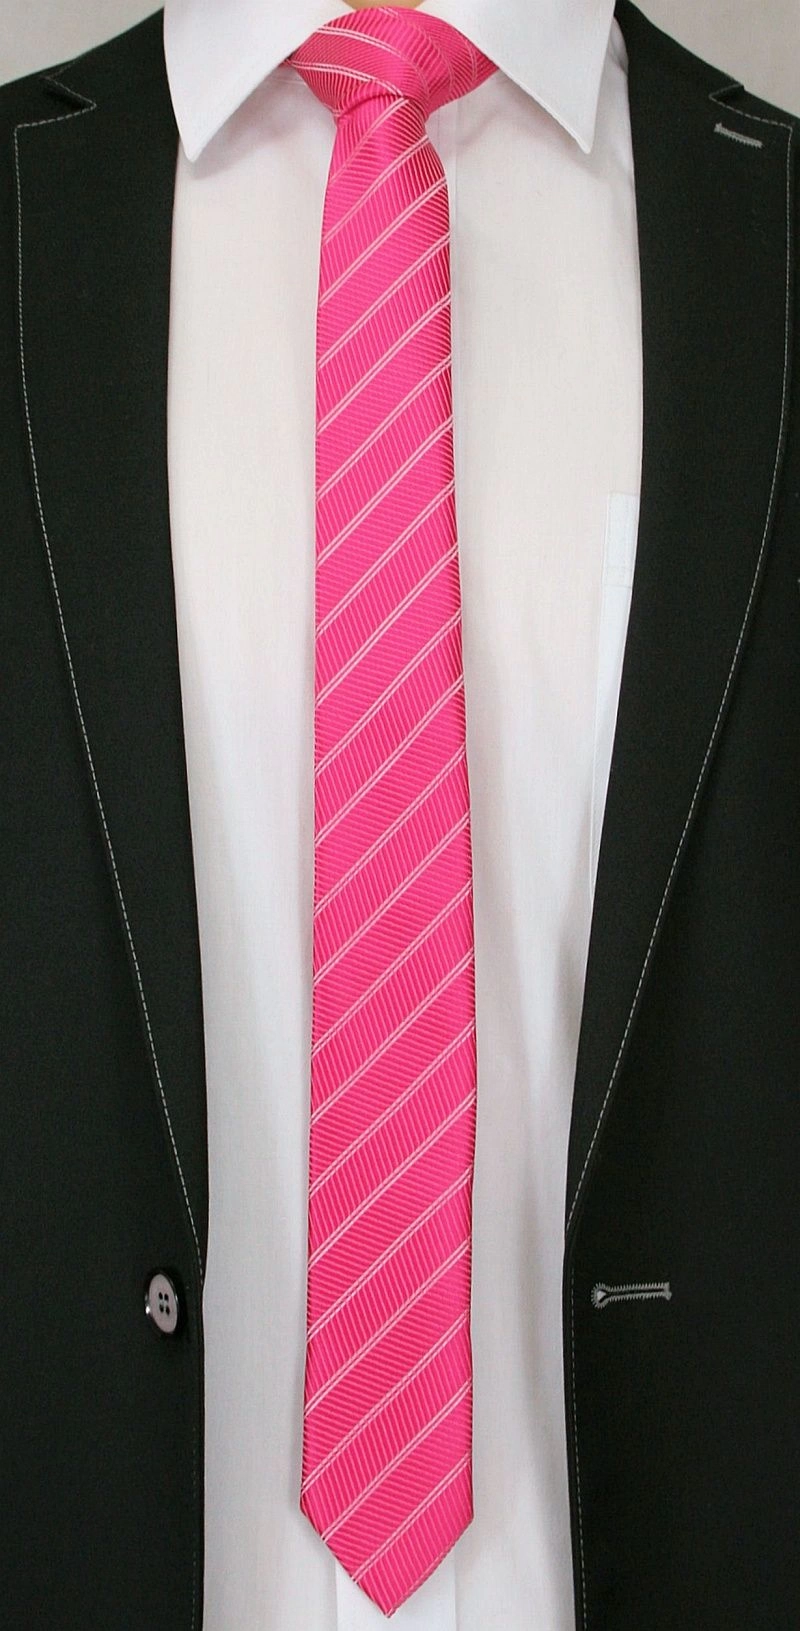 Różowy Stylowy Krawat (Śledź) Męski -ALTIES- 5 cm, Wąski, w Paski